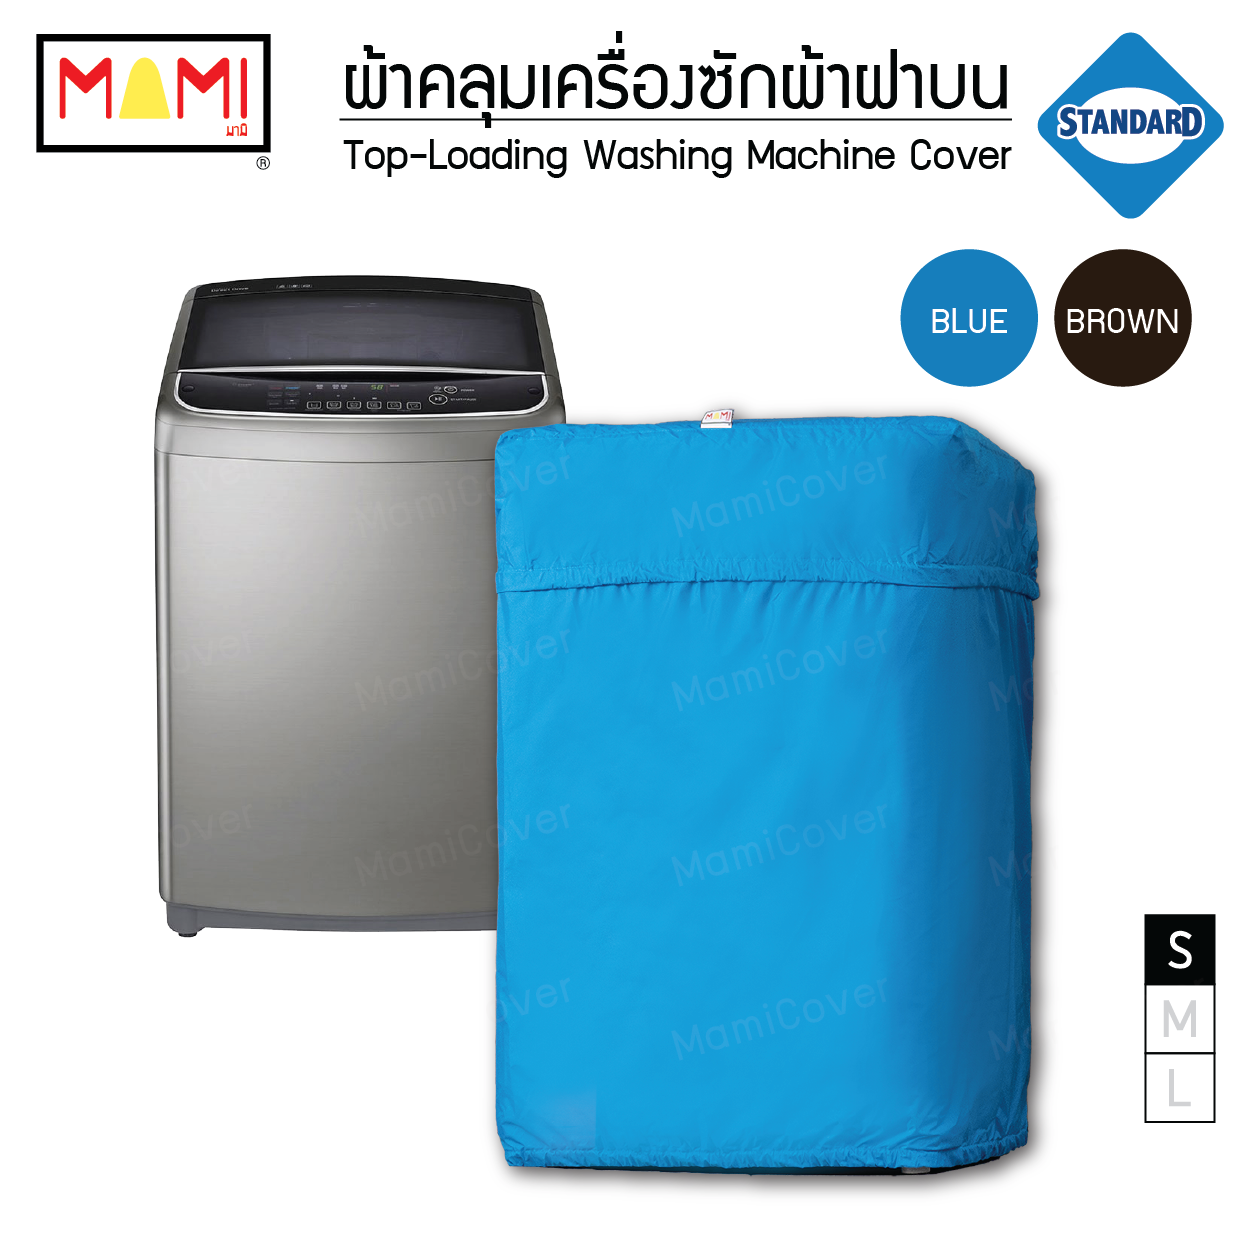 ผ้าคลุมเครื่องซักผ้าฝาบน กันฝุ่น กันแดด กันฝนสาด มีช่องร้อยท่อน้ำ+สายไฟ Mami รุ่น Standard  สีฟ้า